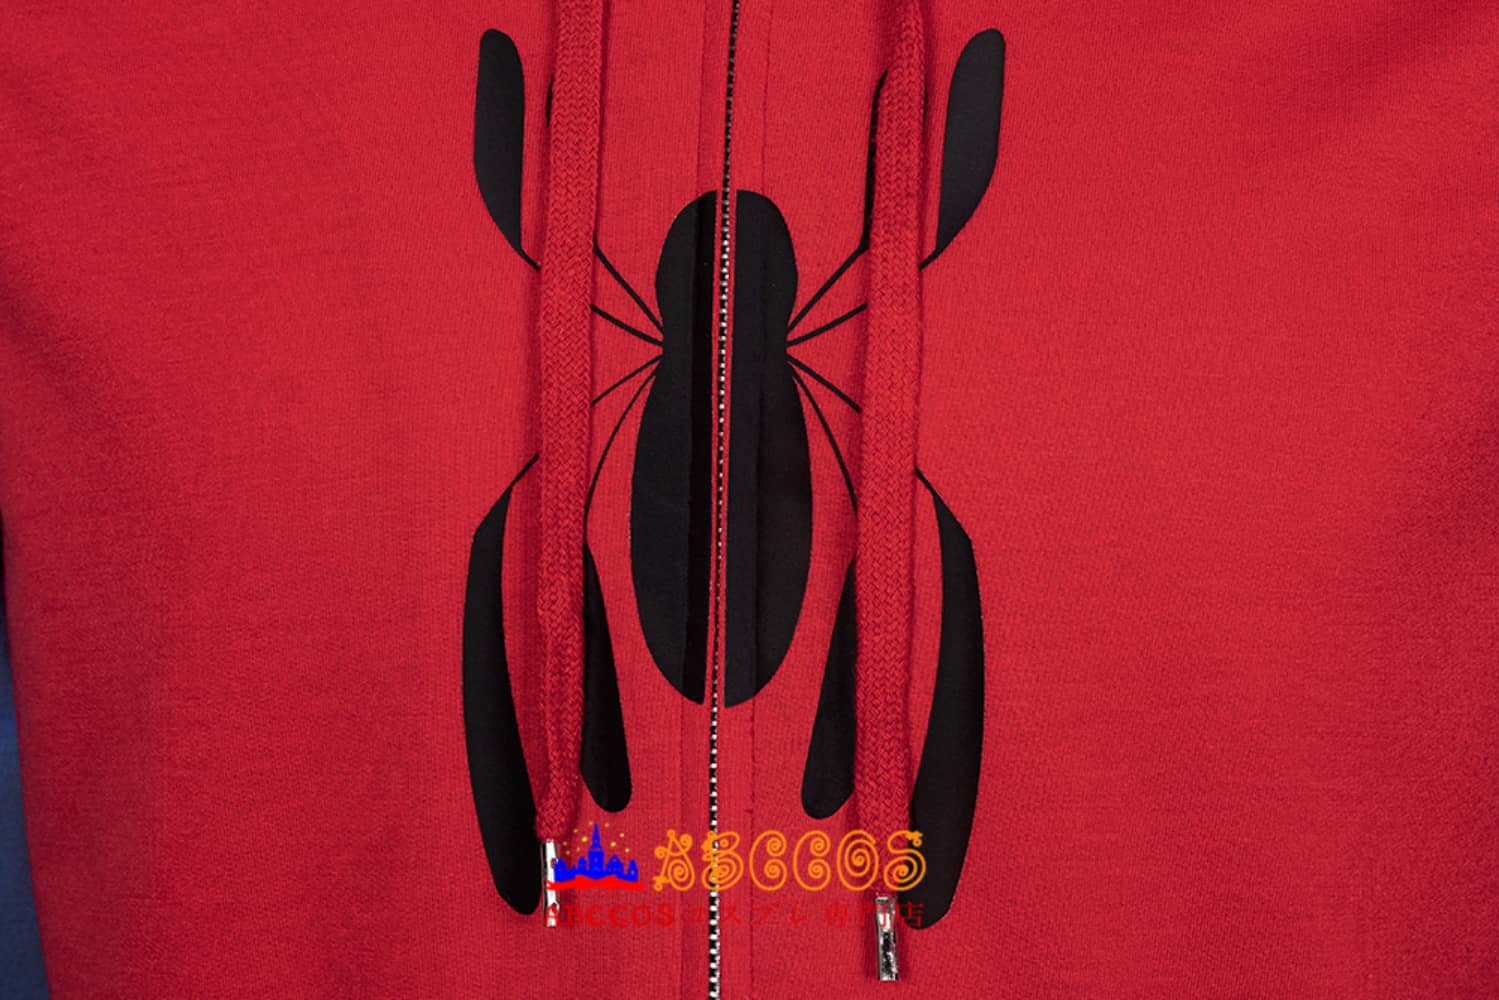 『スパイダーマン: ホームカミング』（Spider-Man: Homecoming） ピーター・パーカー / スパイダーマン peter parker  コスプレ衣装 コスチューム バラ売り可 abccos製 「受注生産」